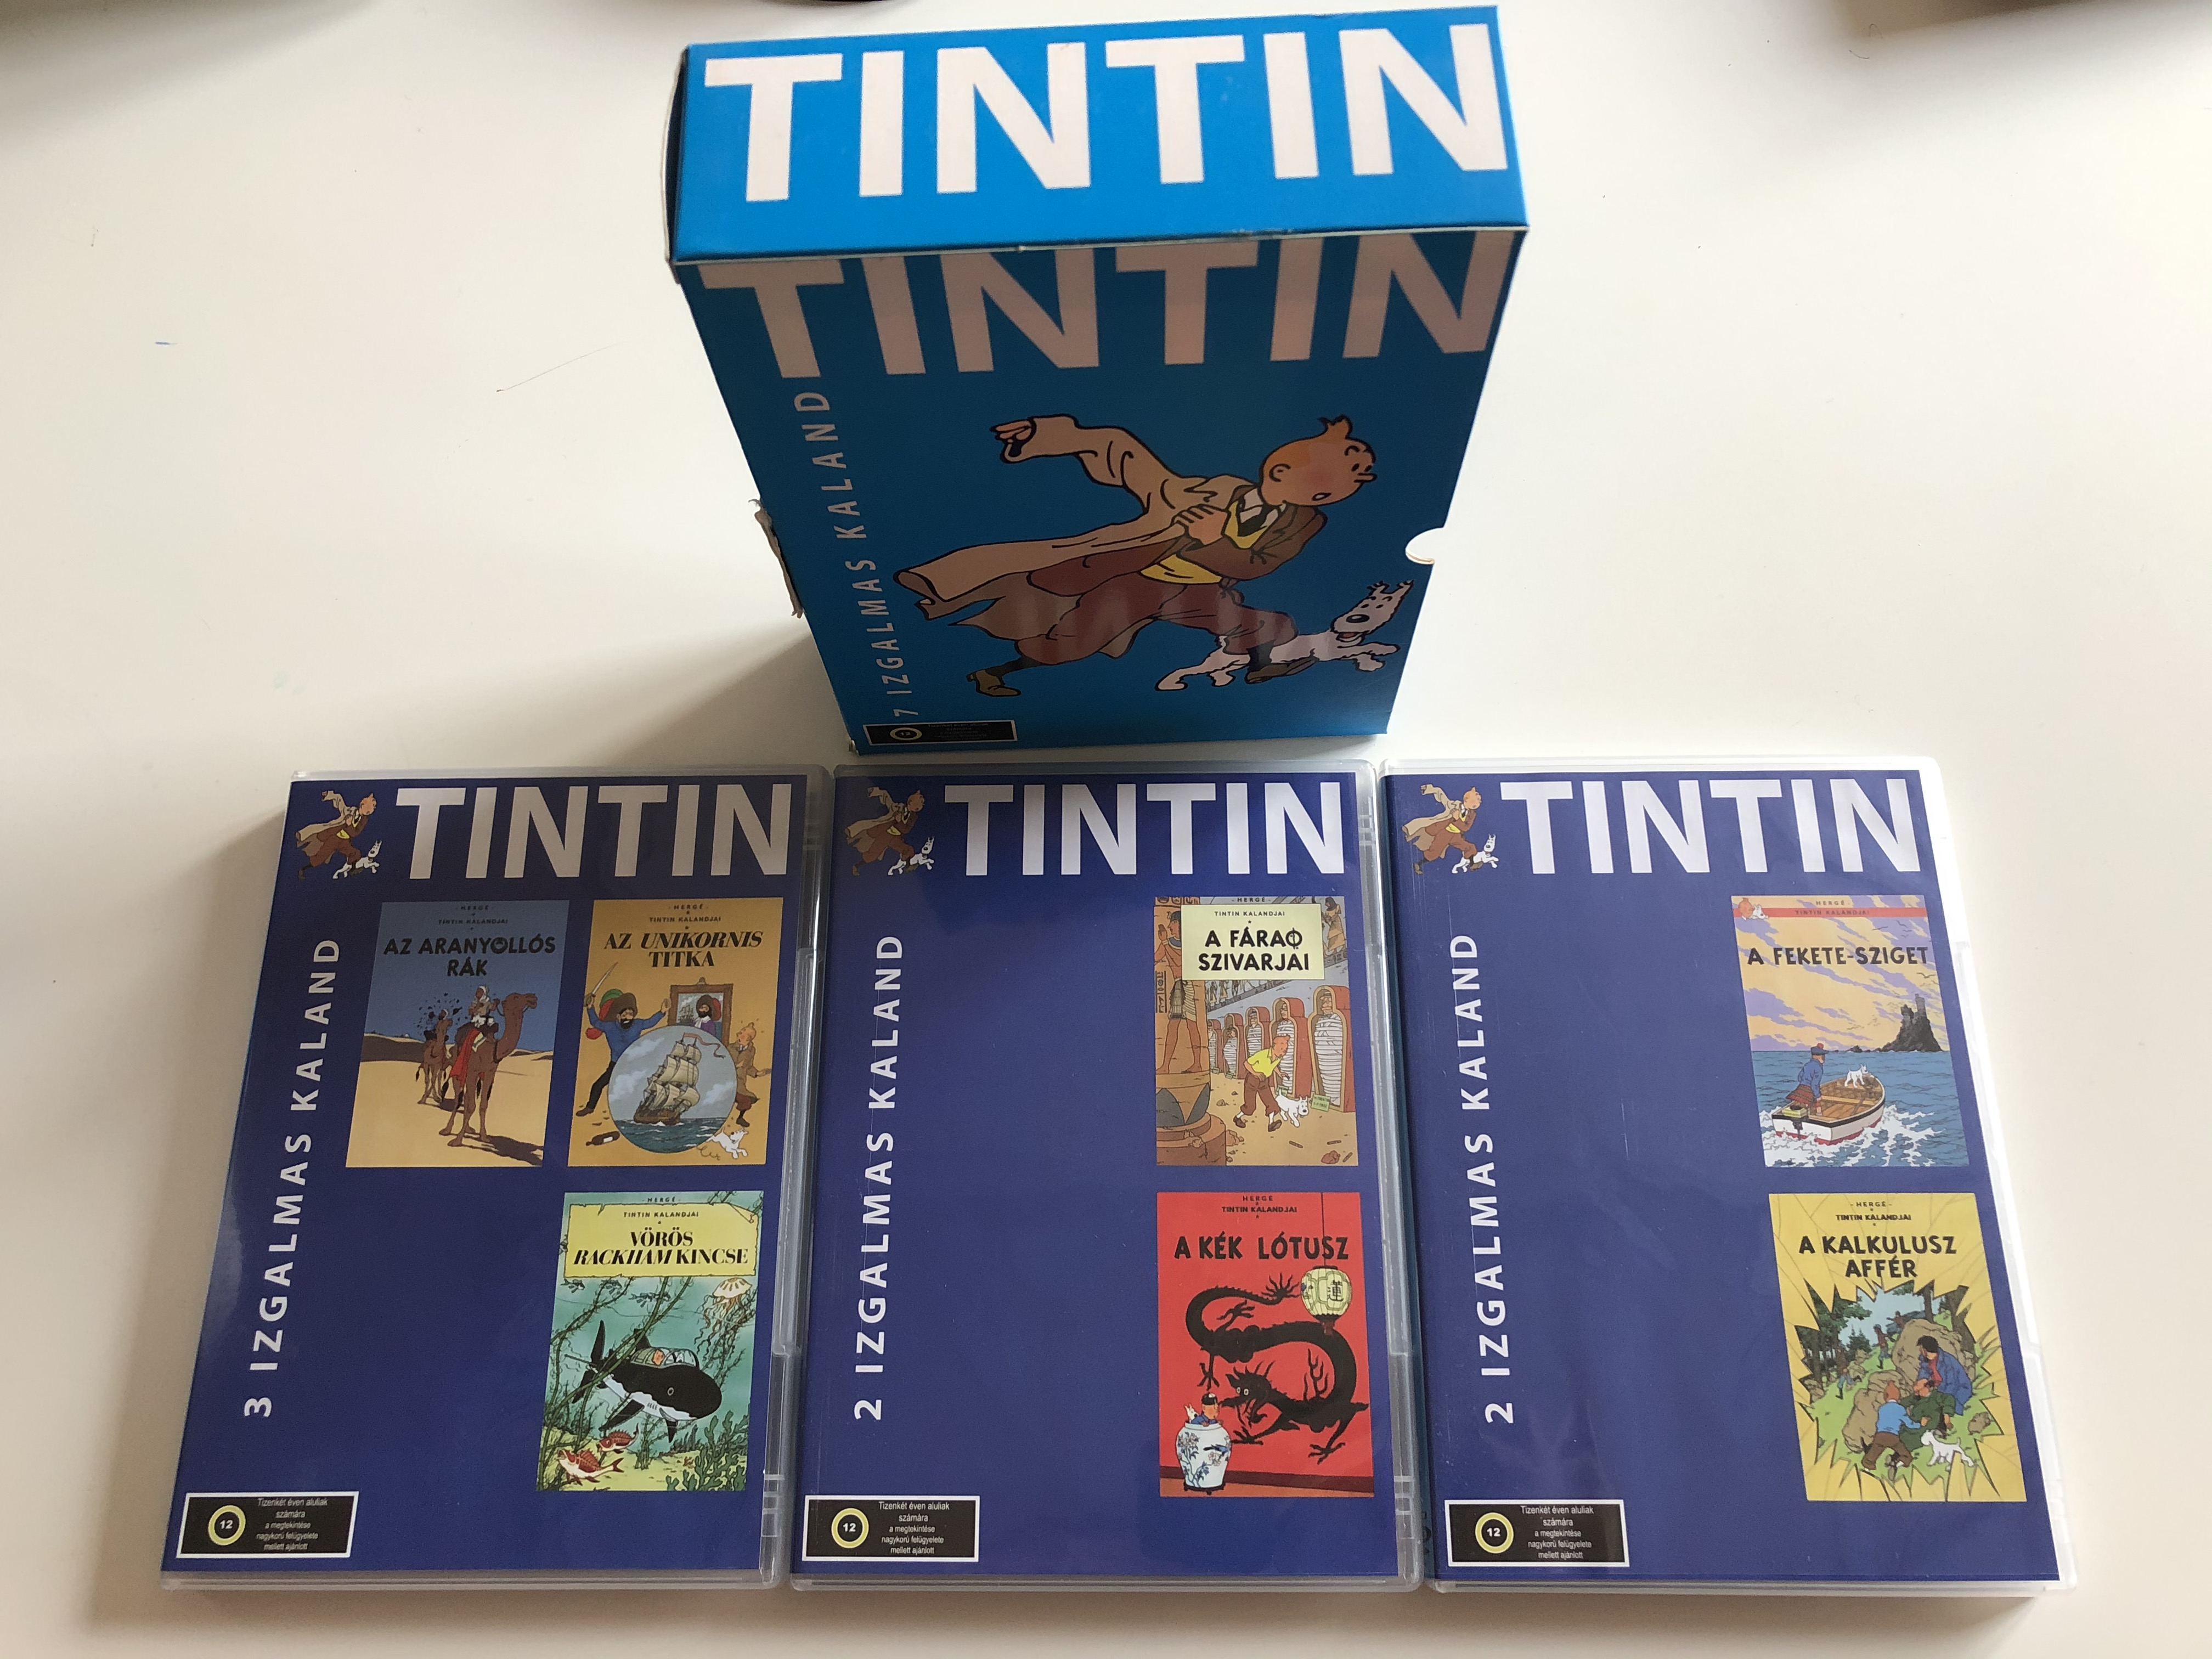 The Adventures of Tintin DVD SET 1991 Tintin - 7 izgalmas kaland / 7  exciting adventures / A fáraó szivarjai, A kék lótusz, A fekete-sziget, A  kalkulusz affér / Les Aventures de Tintin / 3 DVD - bibleinmylanguage